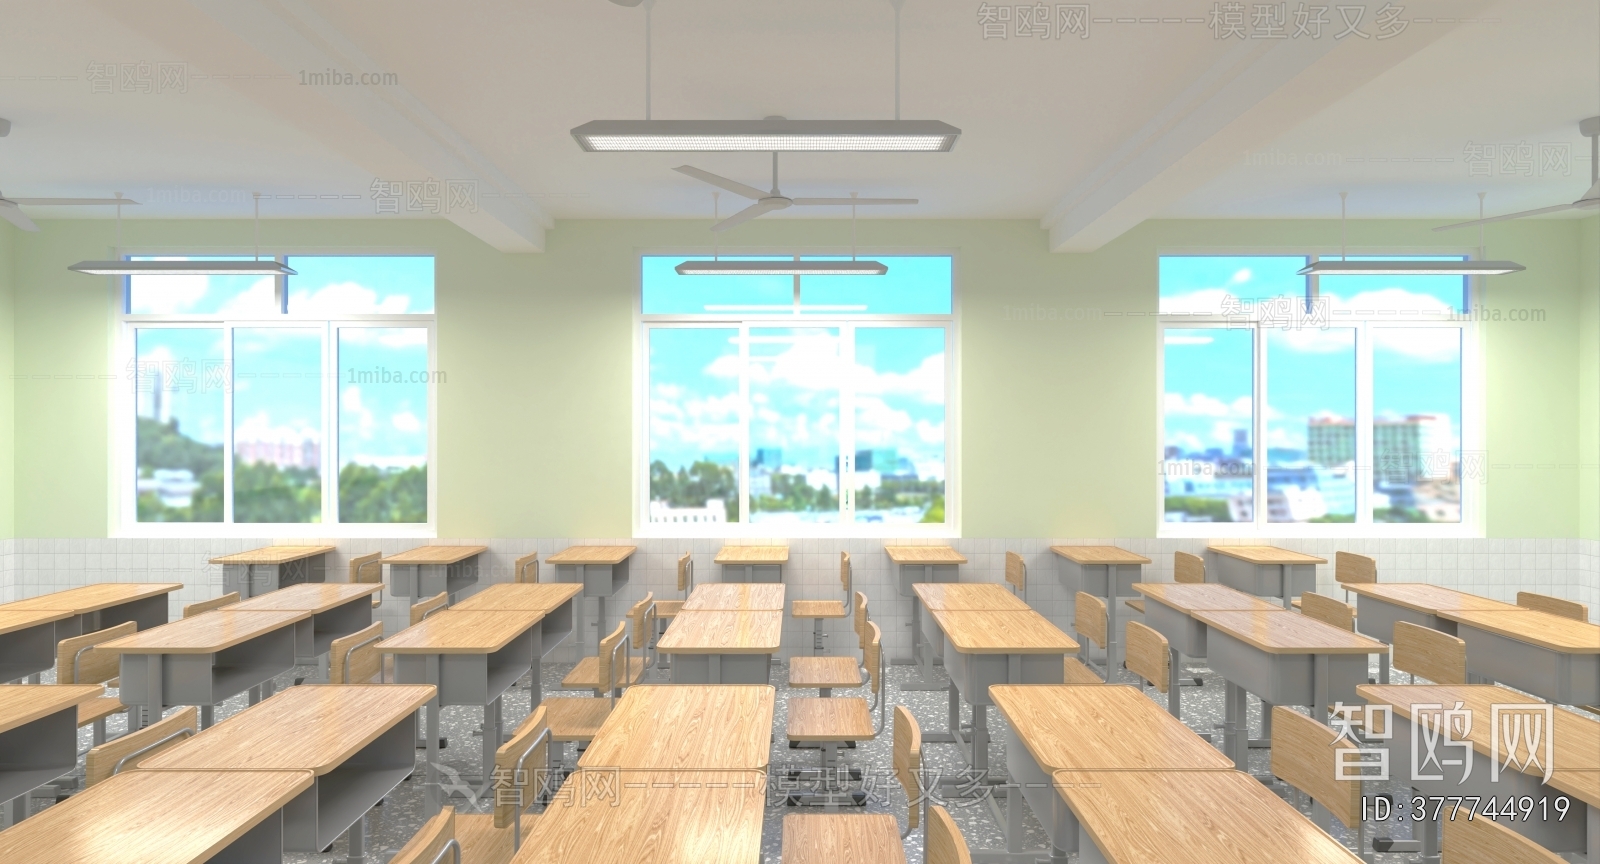 Modern School Classrooms